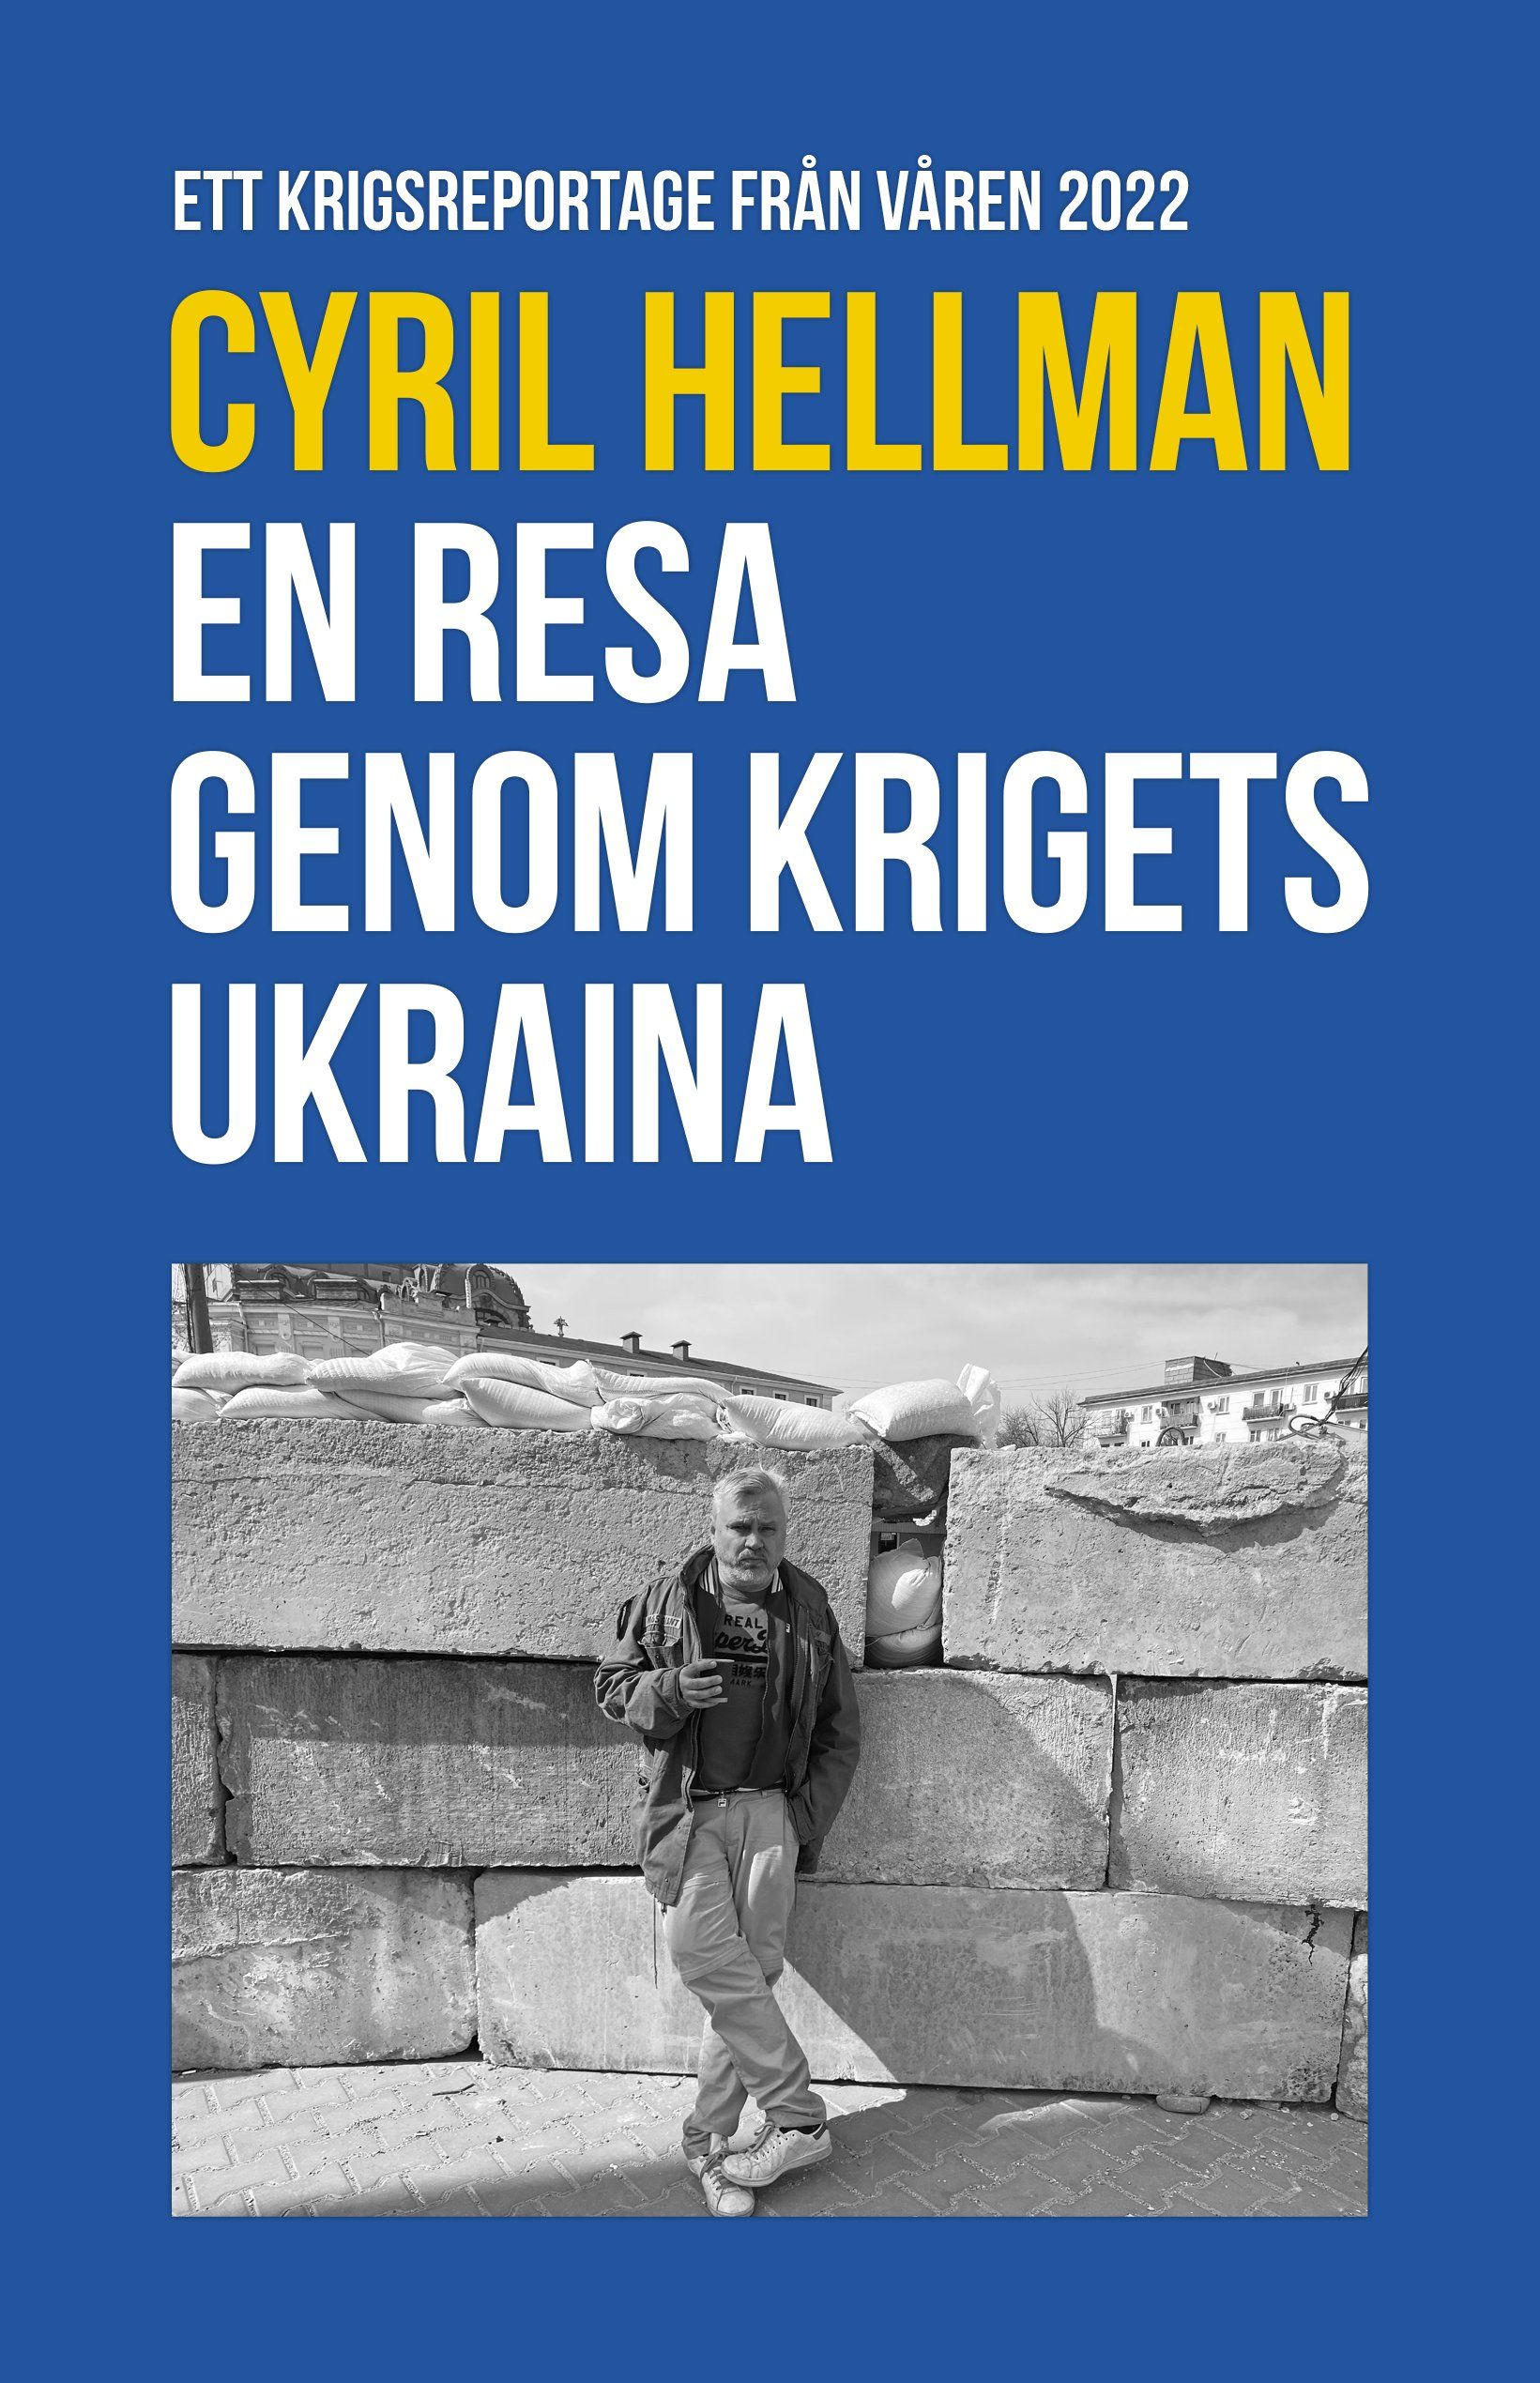 Faktaboken En resa genom krigets Ukraina är skriven av Cyril Hellman på Stevali Bokförlag.